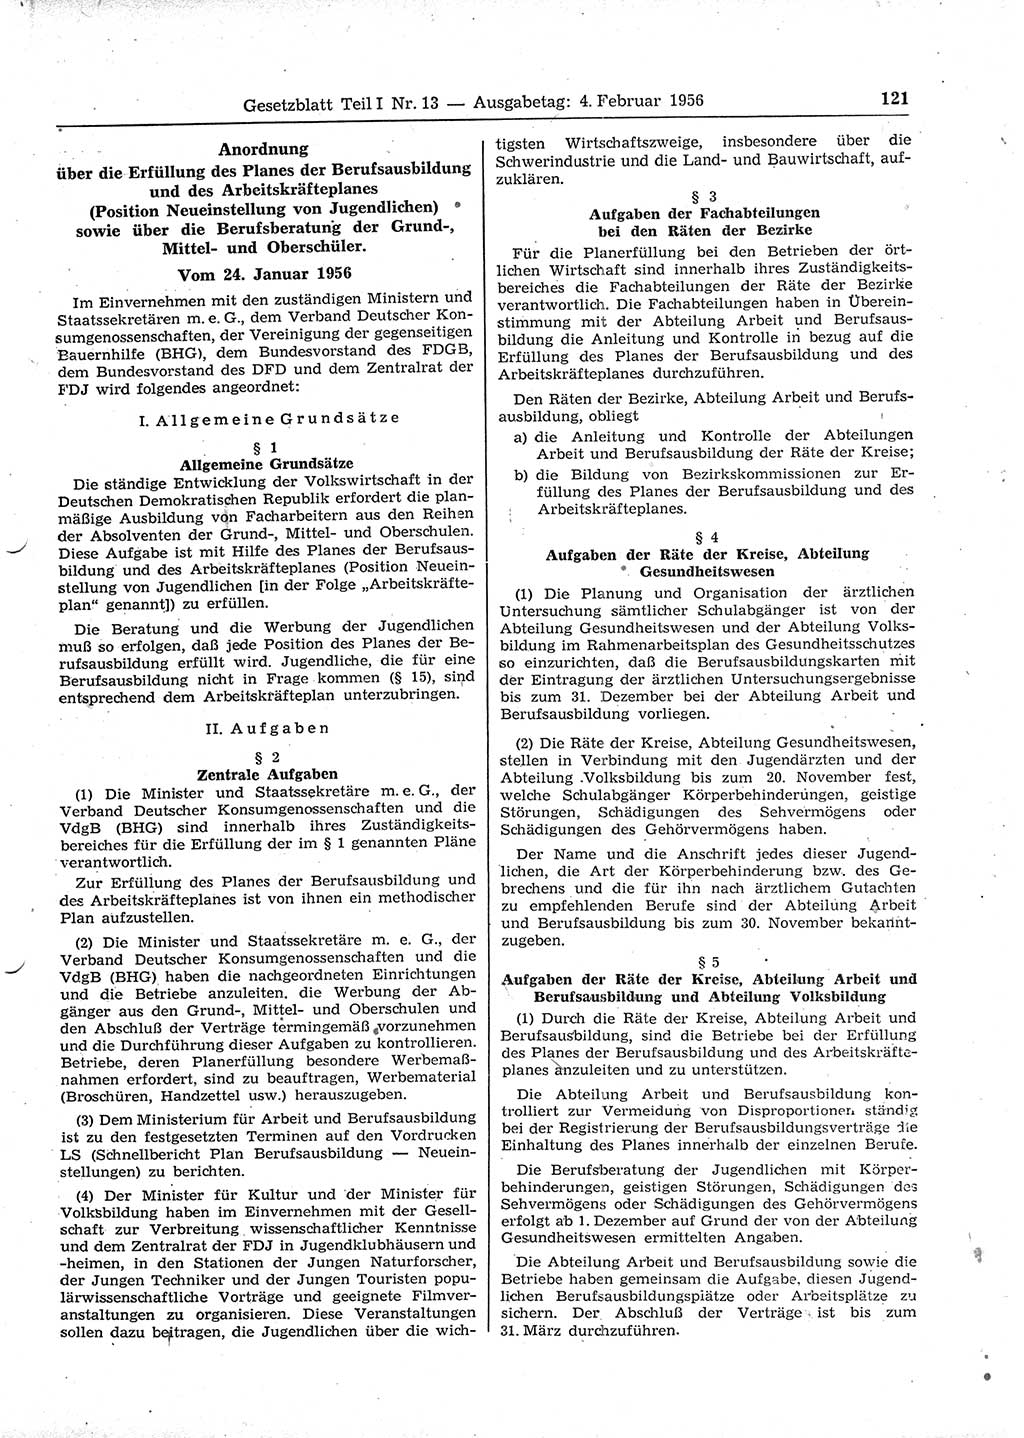 Gesetzblatt (GBl.) der Deutschen Demokratischen Republik (DDR) Teil Ⅰ 1956, Seite 121 (GBl. DDR Ⅰ 1956, S. 121)